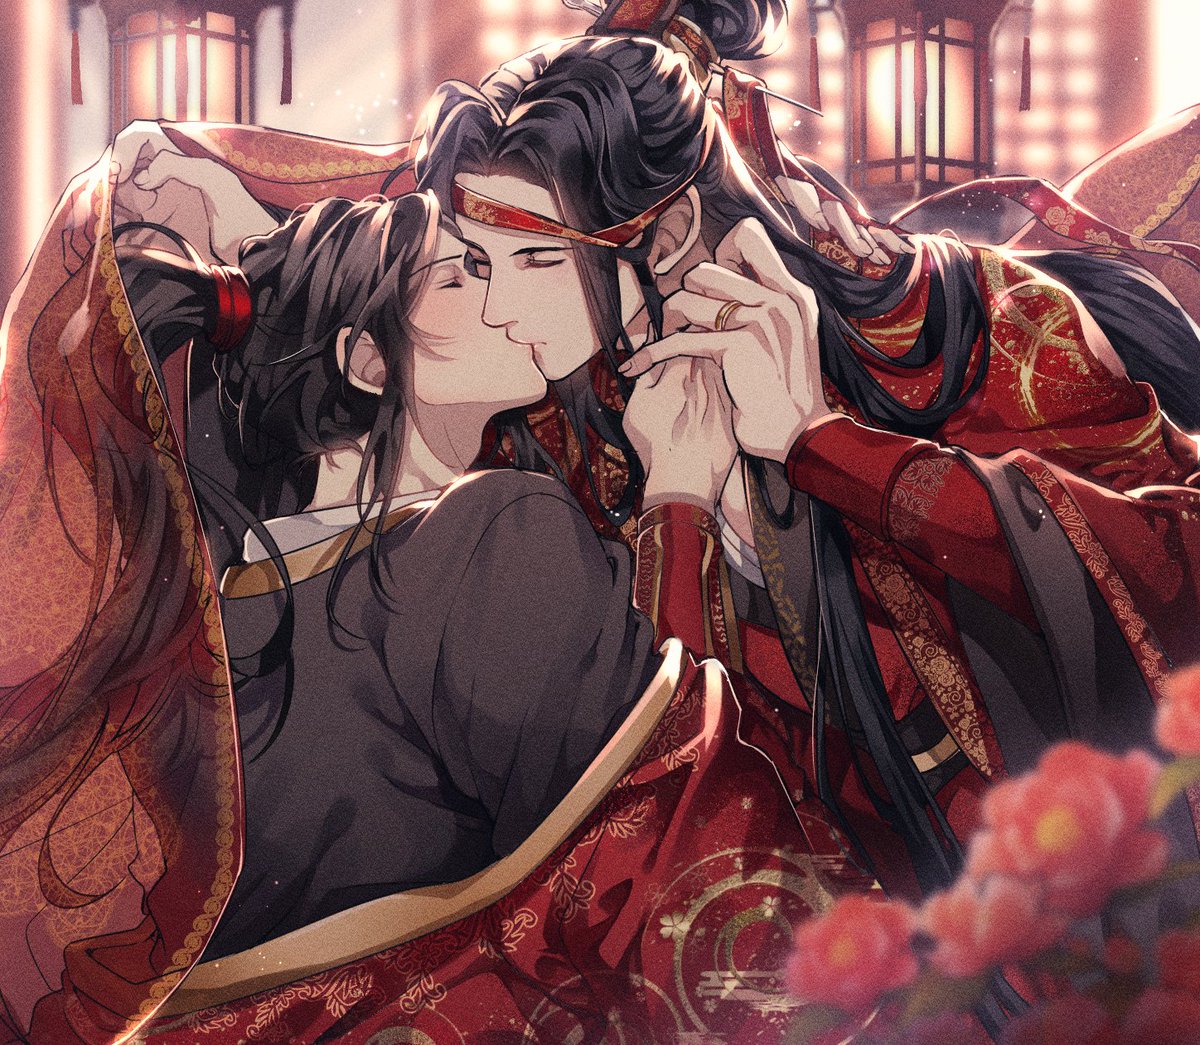 yaoi male focus kiss multiple boys 2boys scarf black hair  illustration images